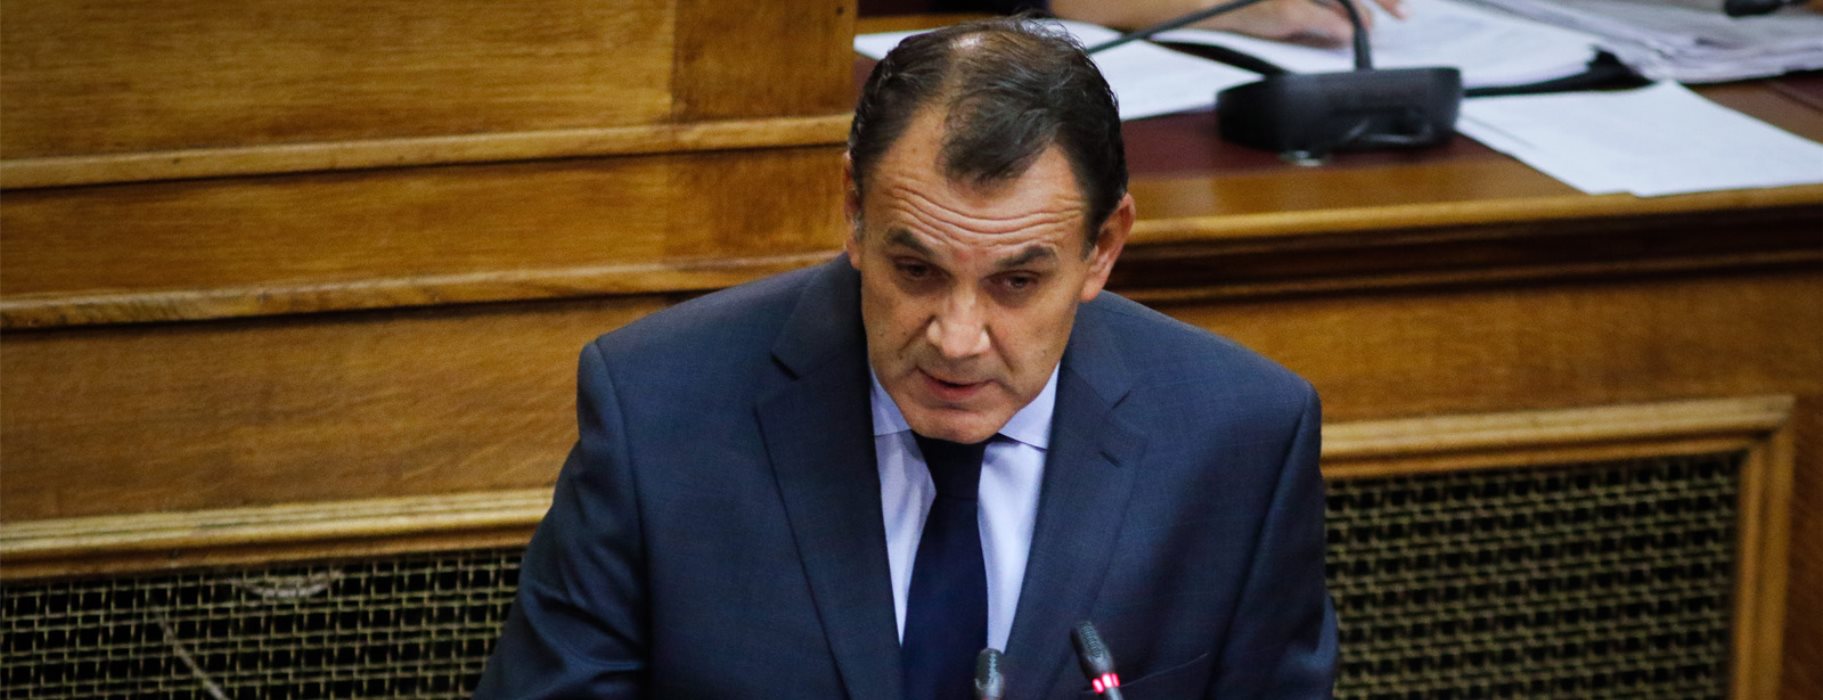 Ποιος είναι ο νέος υπουργός Εθνικής Αμυνας Νίκος Παναγιωτόπουλος